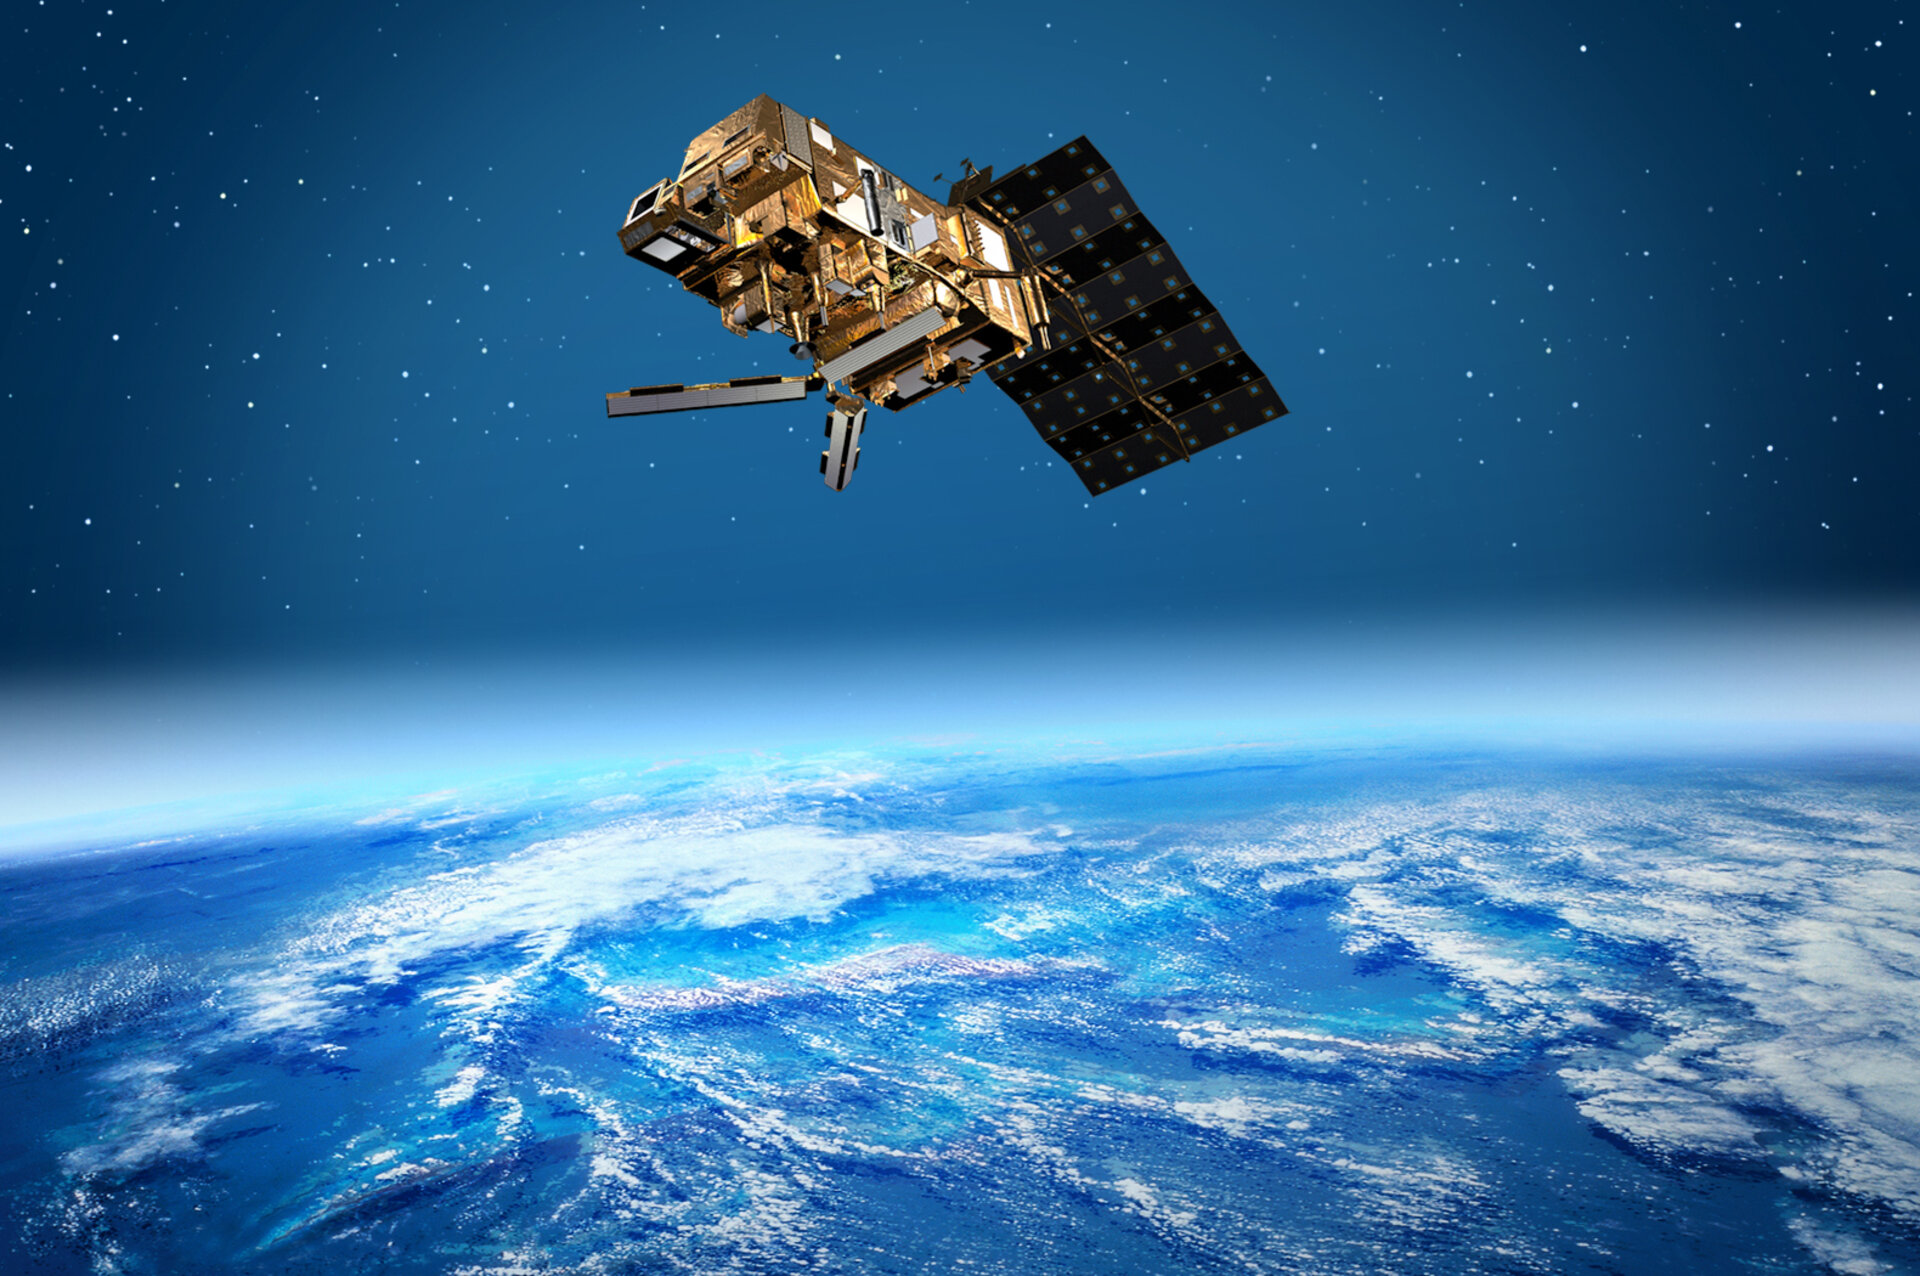 FCC зобов'язала стільникових операторів швидше прибирати супутники з орбіти після закінчення місій